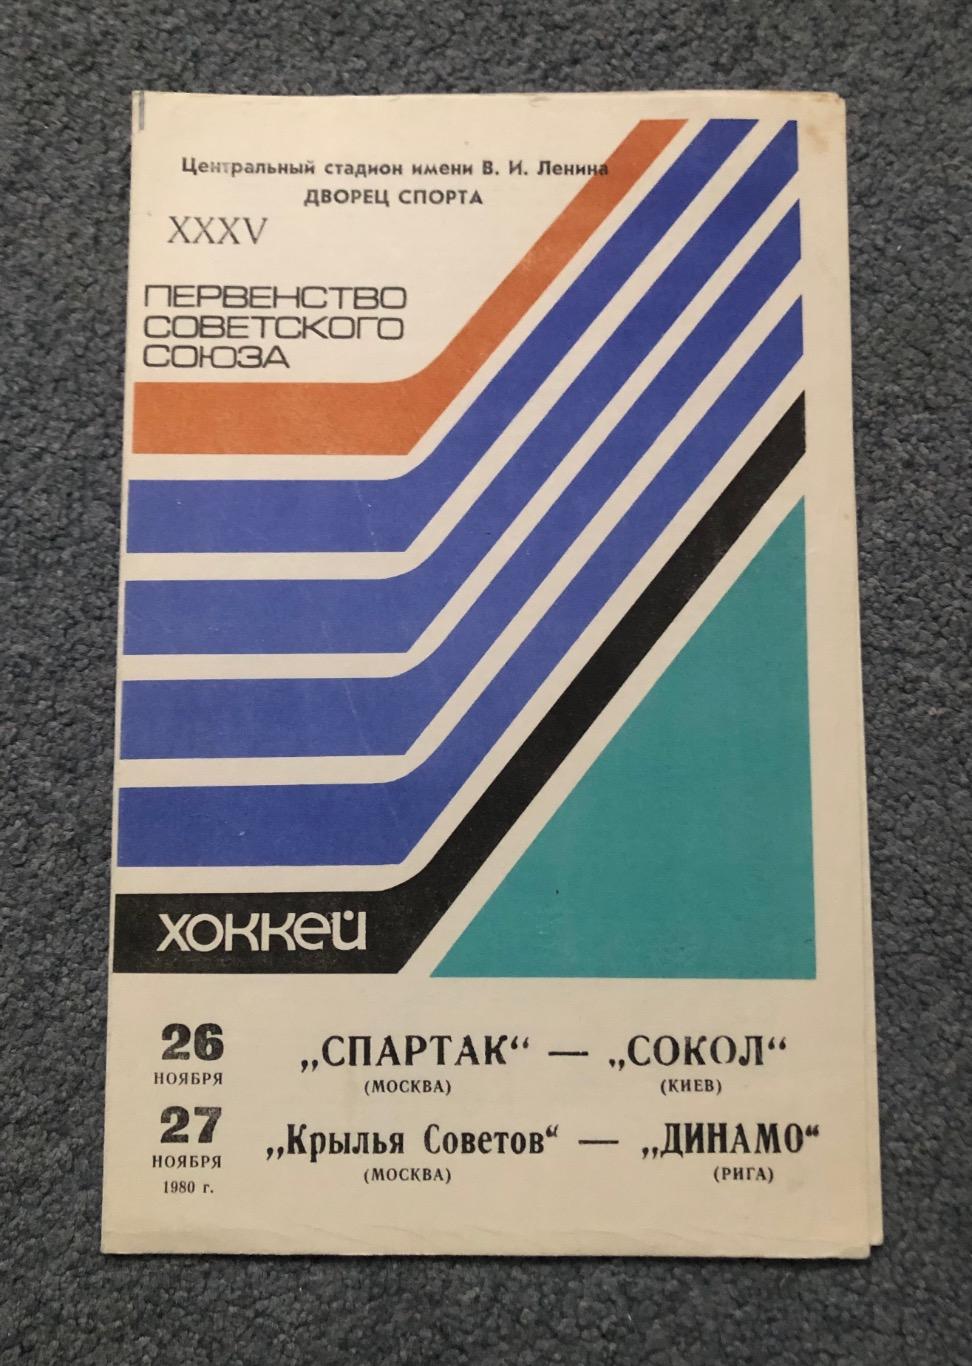 Спартак Москва - Сокол Киев, Крылья Советов - Динамо Рига, 26 и 27.11.1980